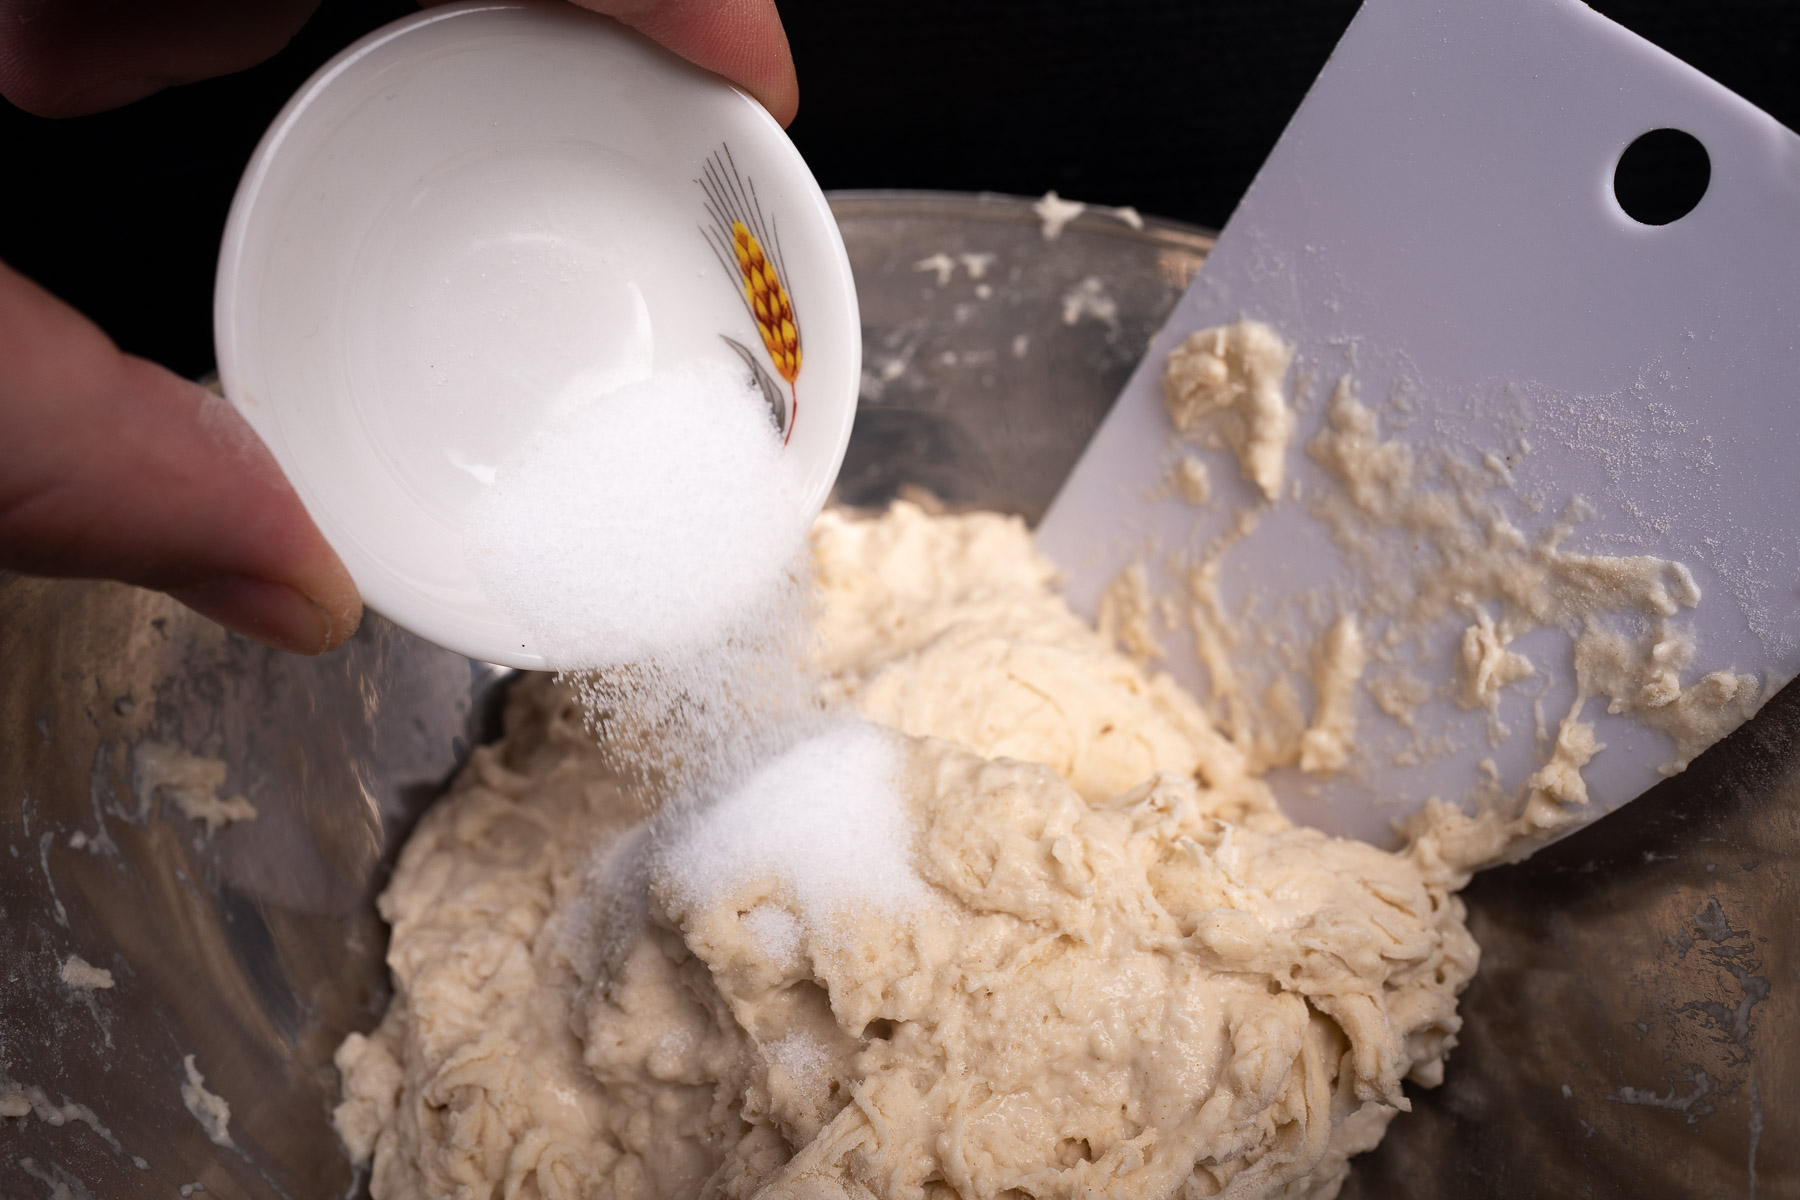 po wstępnym wymieszaniu dodajemy sól i wyrabiamy przez 7-10 minut